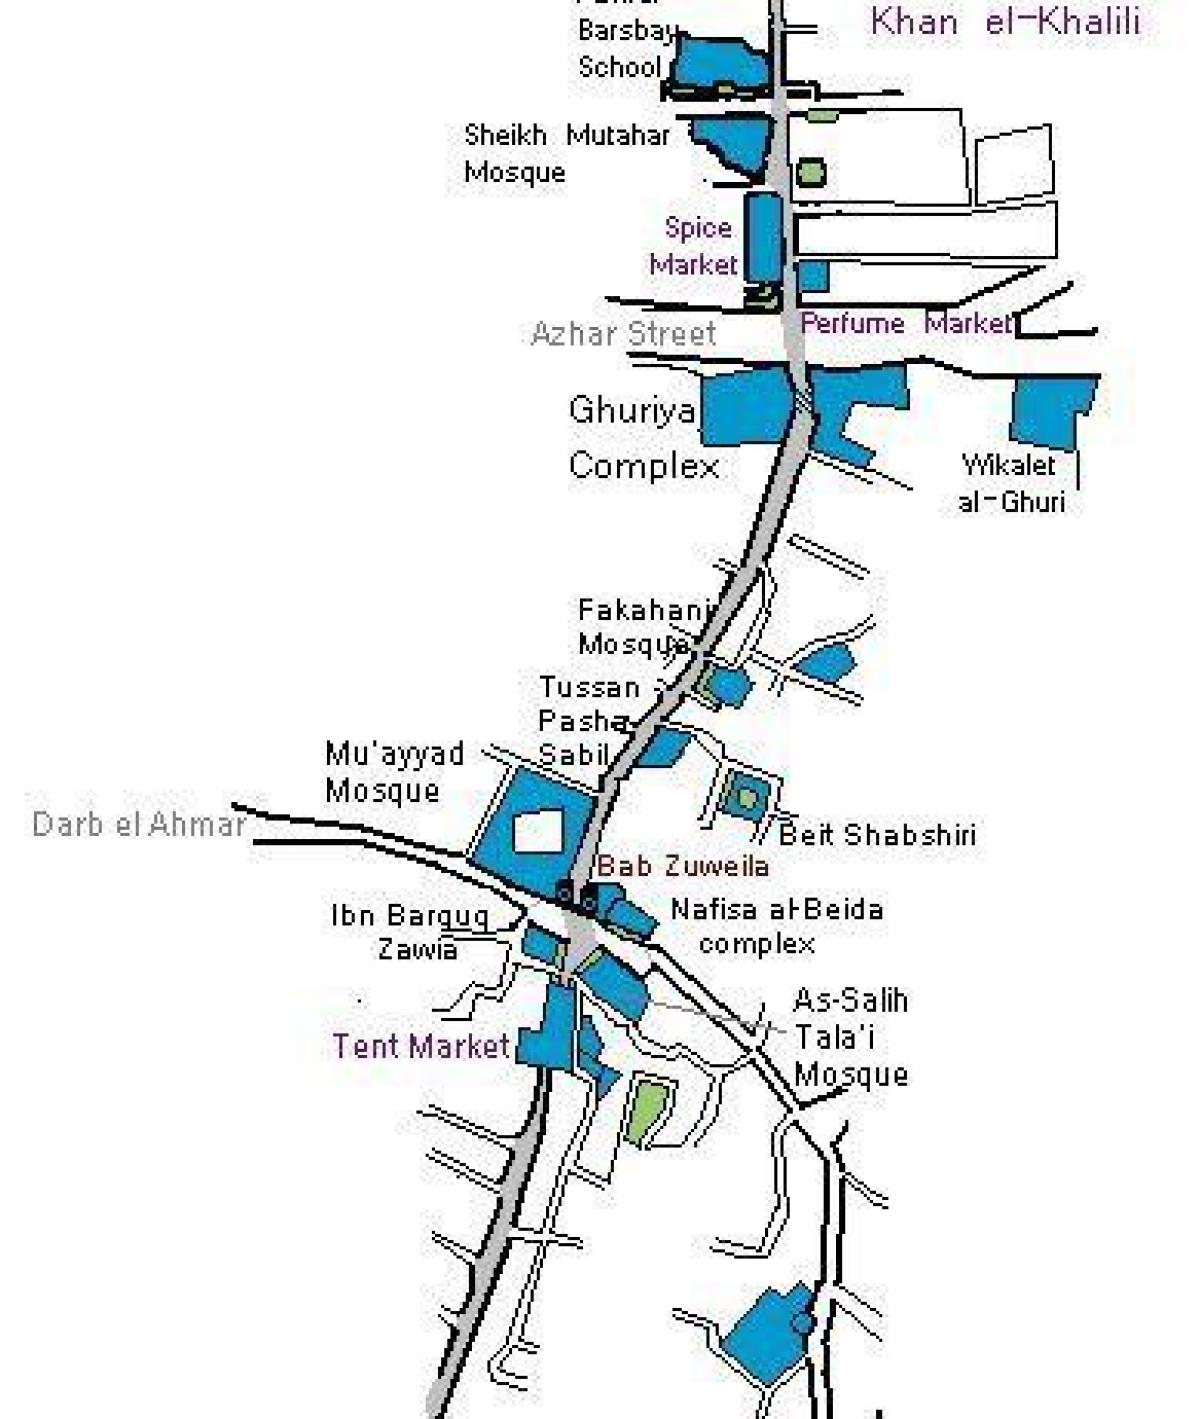 khan el khalili bazar mapu